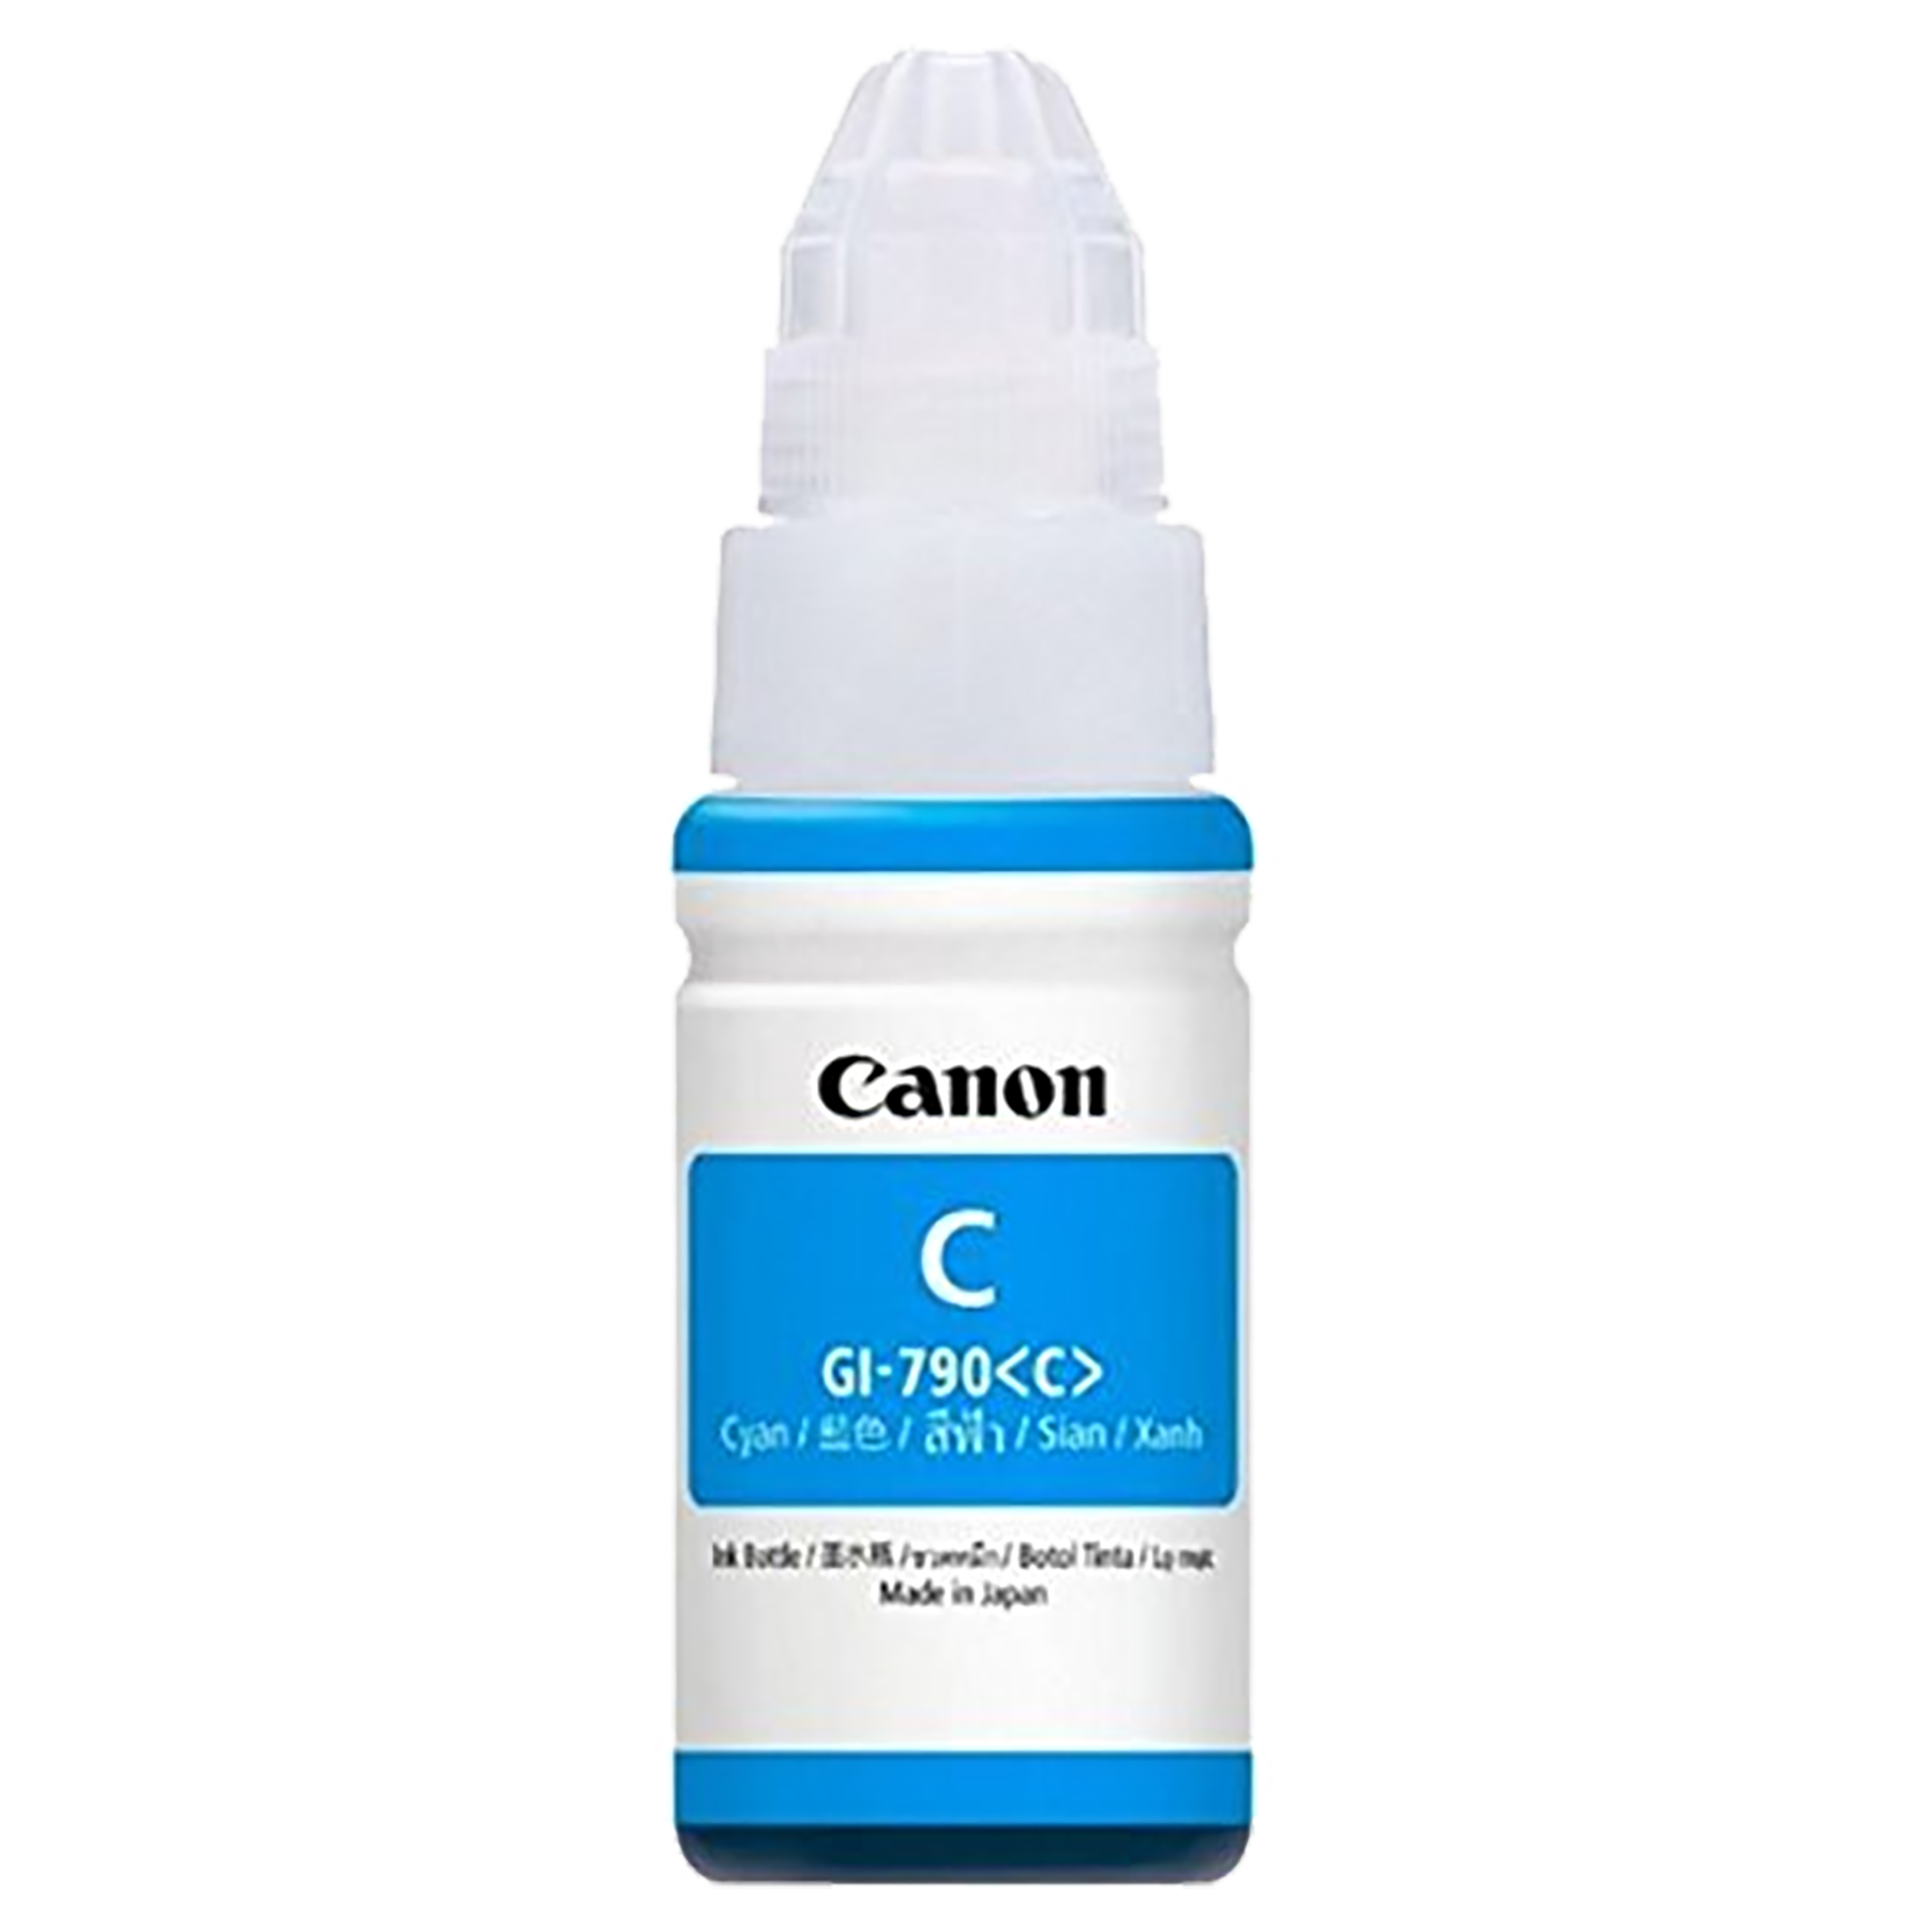 Canon Pixma Ink GI-790 Pack Of 1 Ink Bottle (0672C003AF, Cyan)